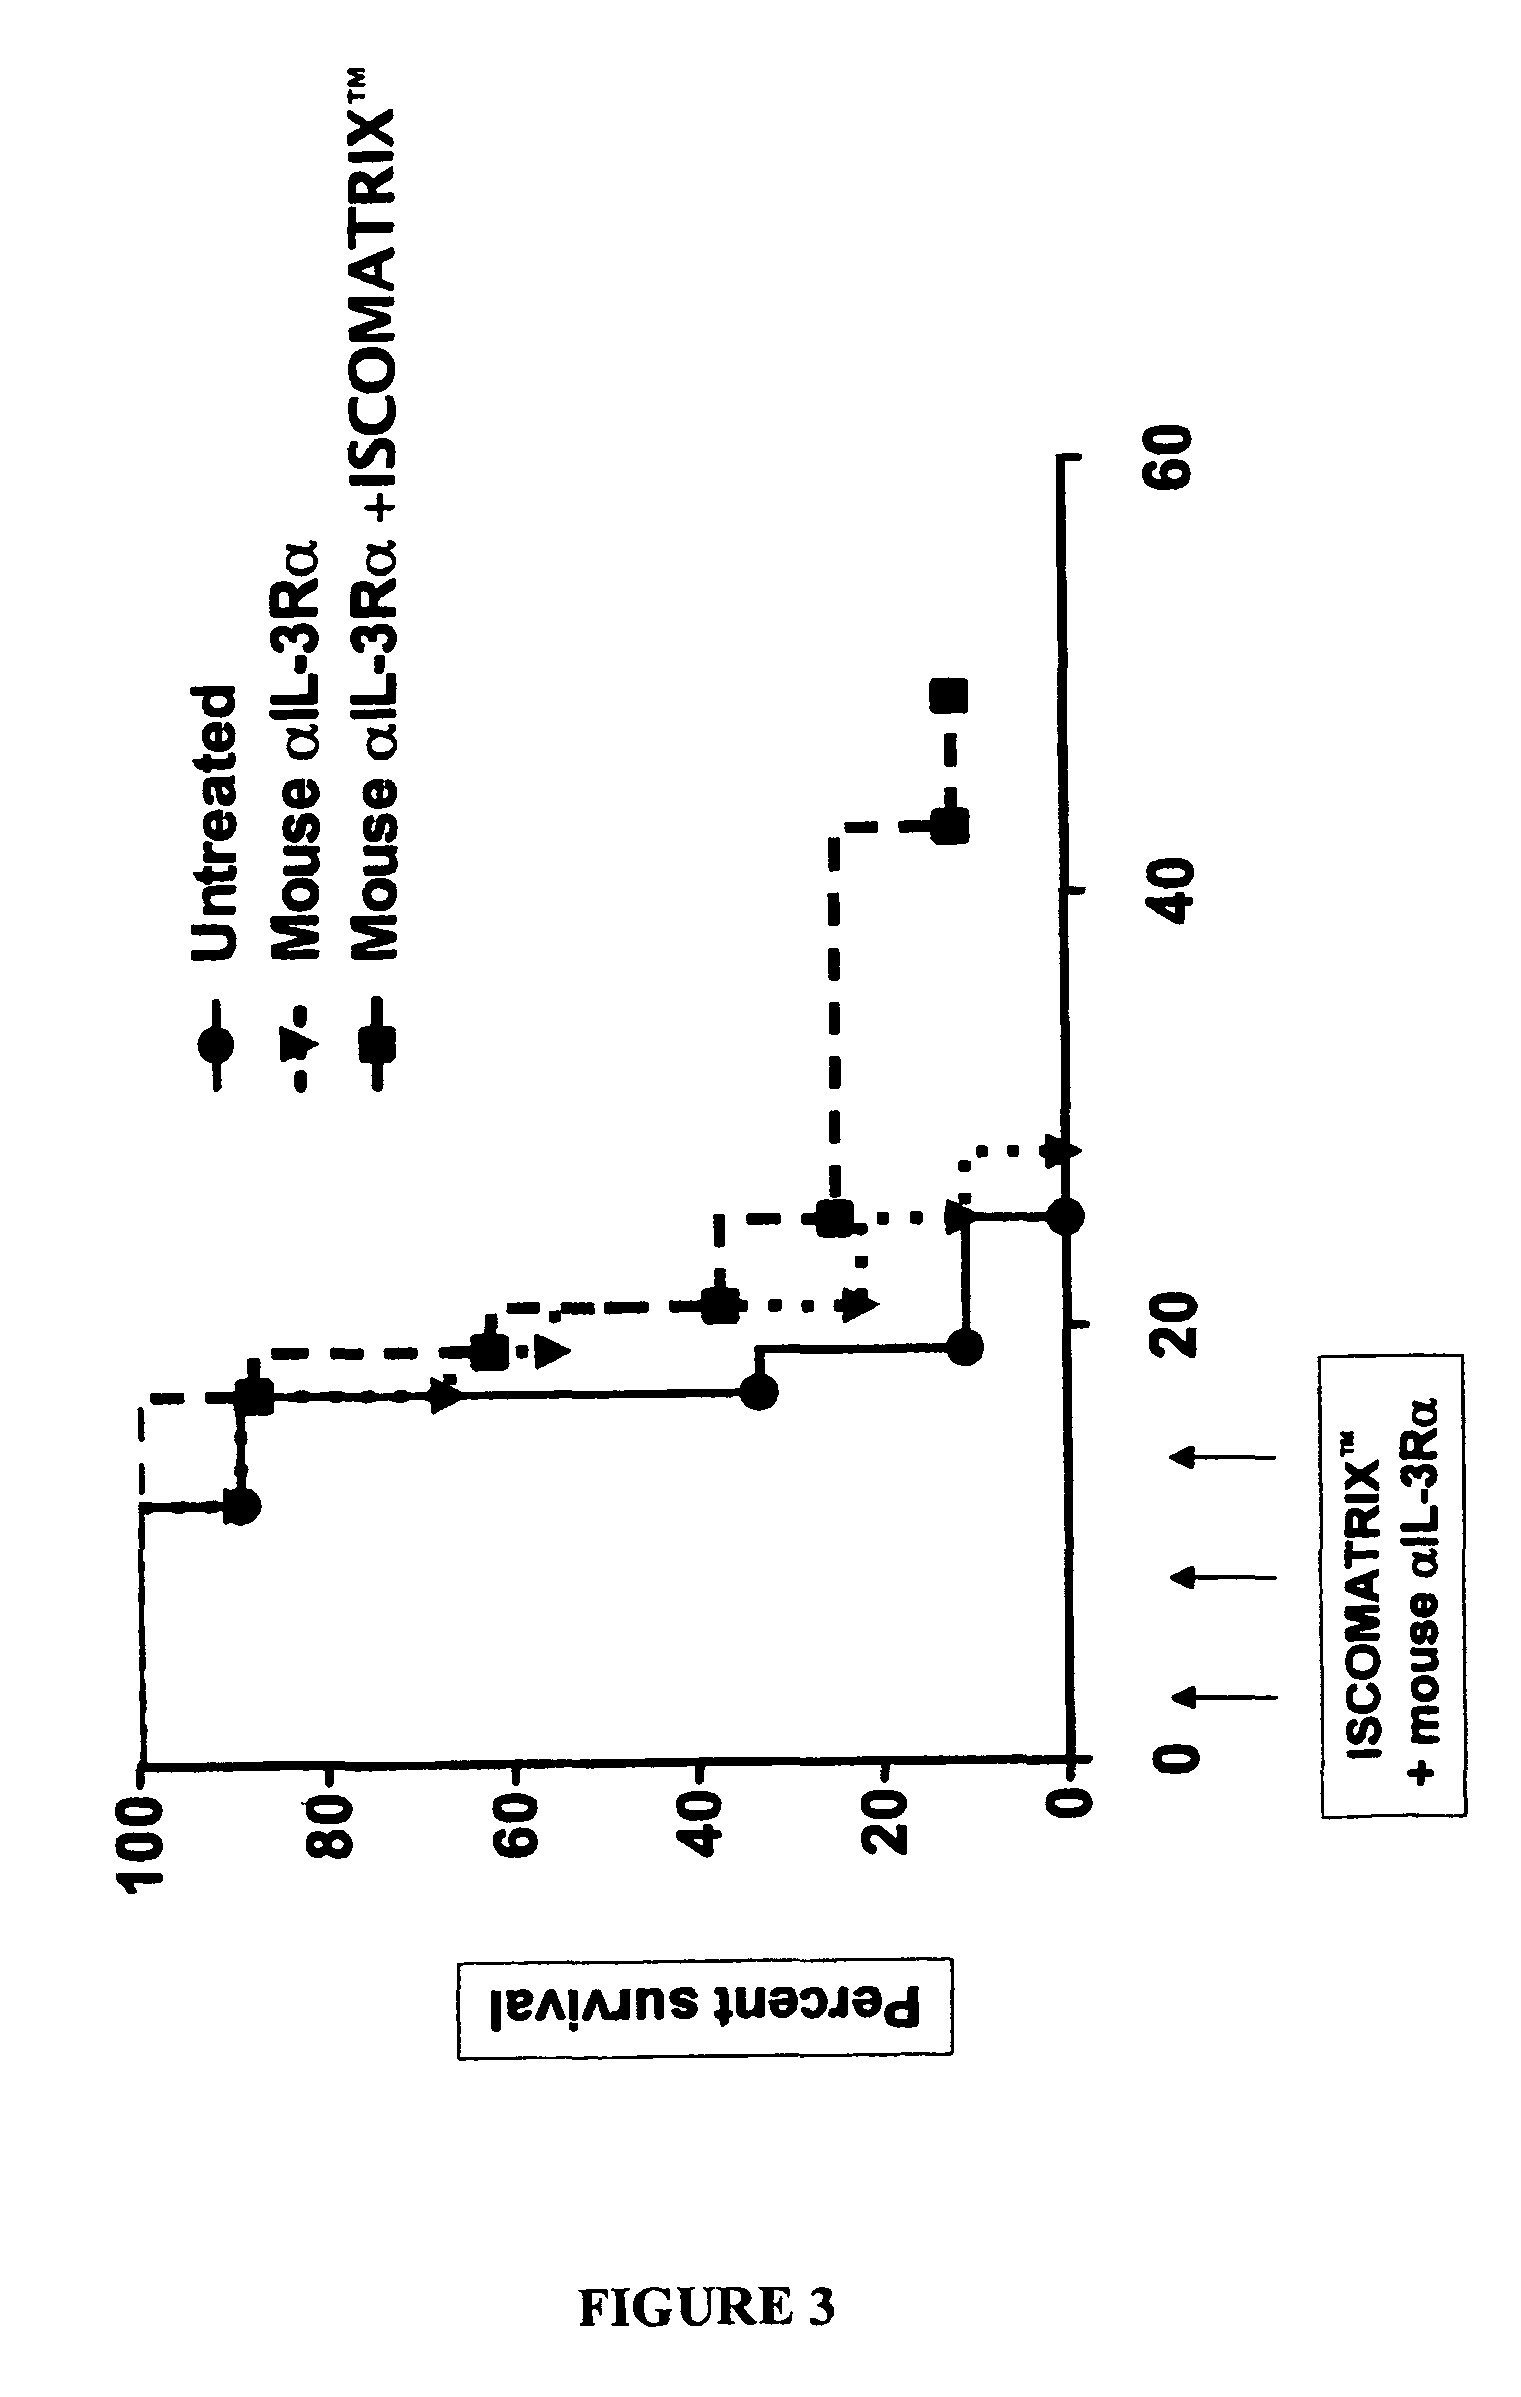 Immunotherapeutic method involving CD123 (IL-3Rα) antibodies and immunostimulating complex